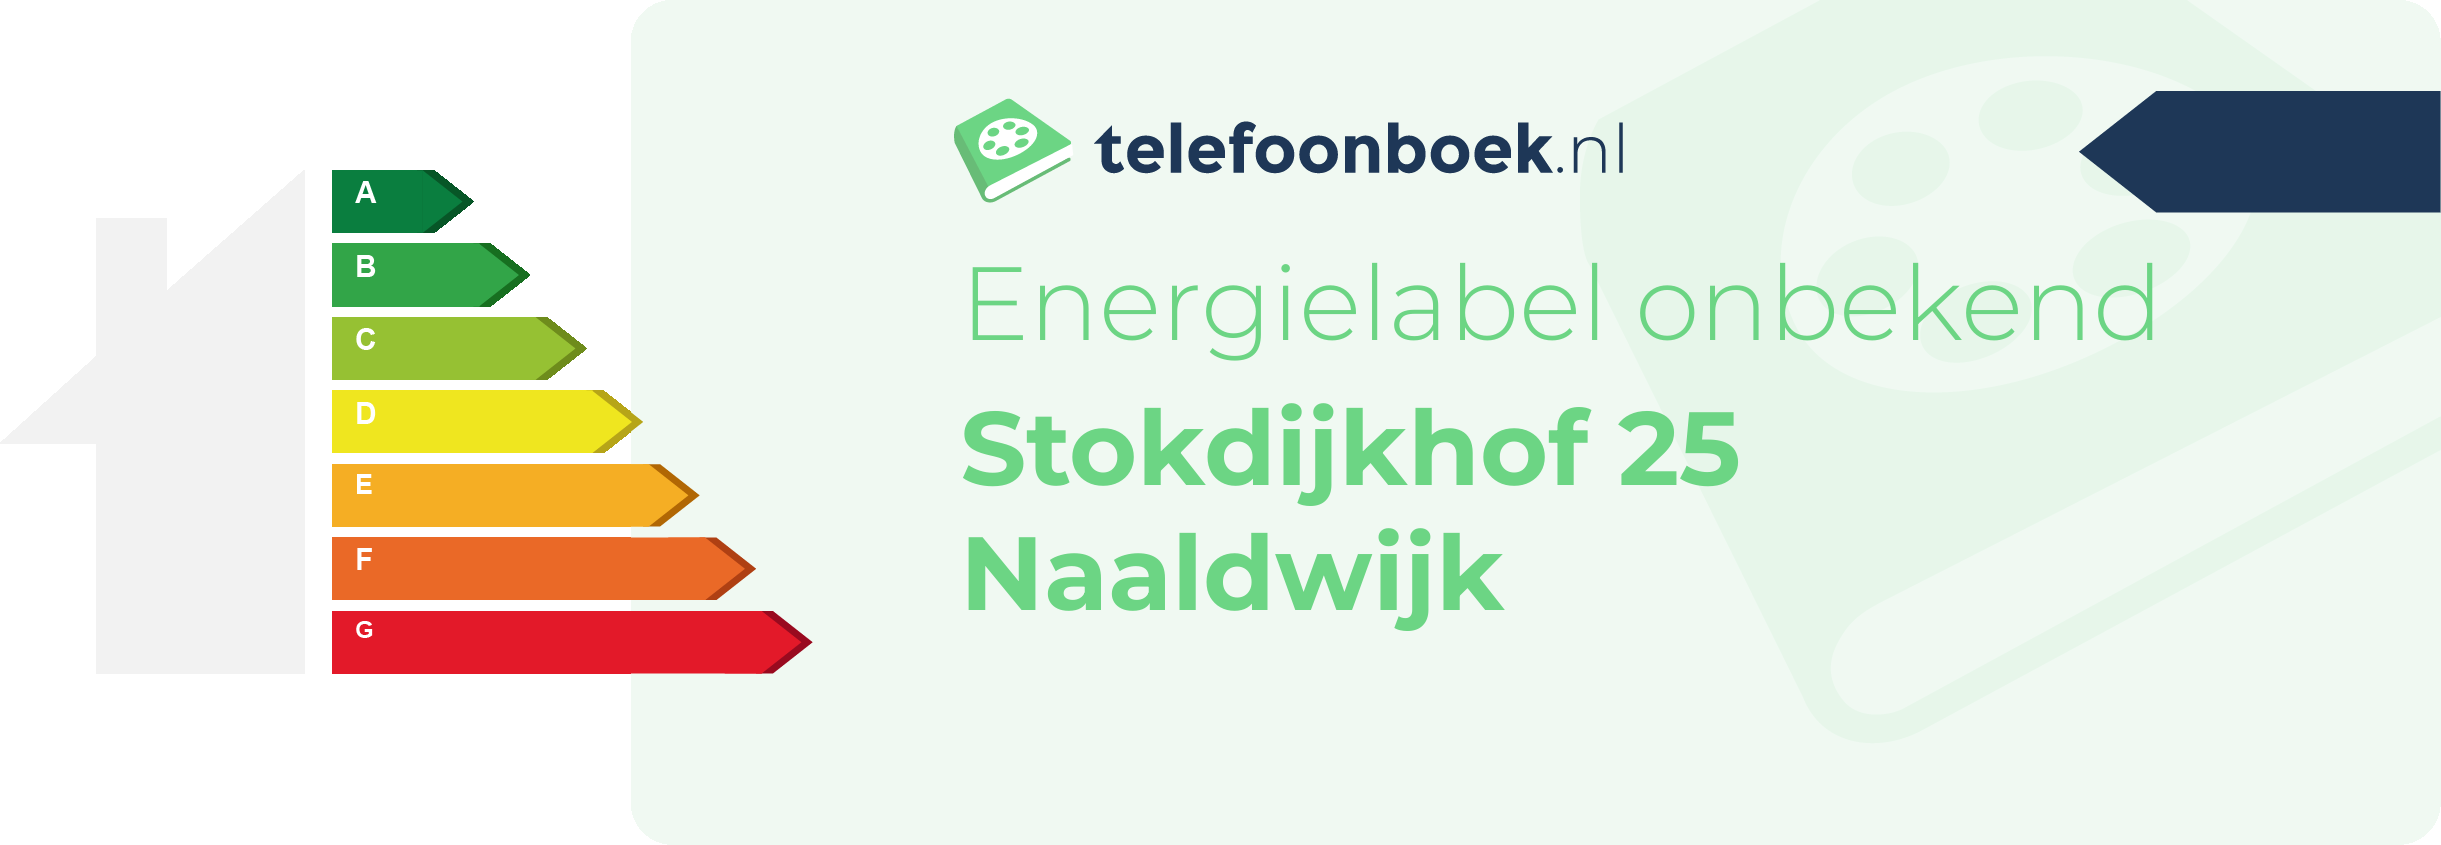 Energielabel Stokdijkhof 25 Naaldwijk